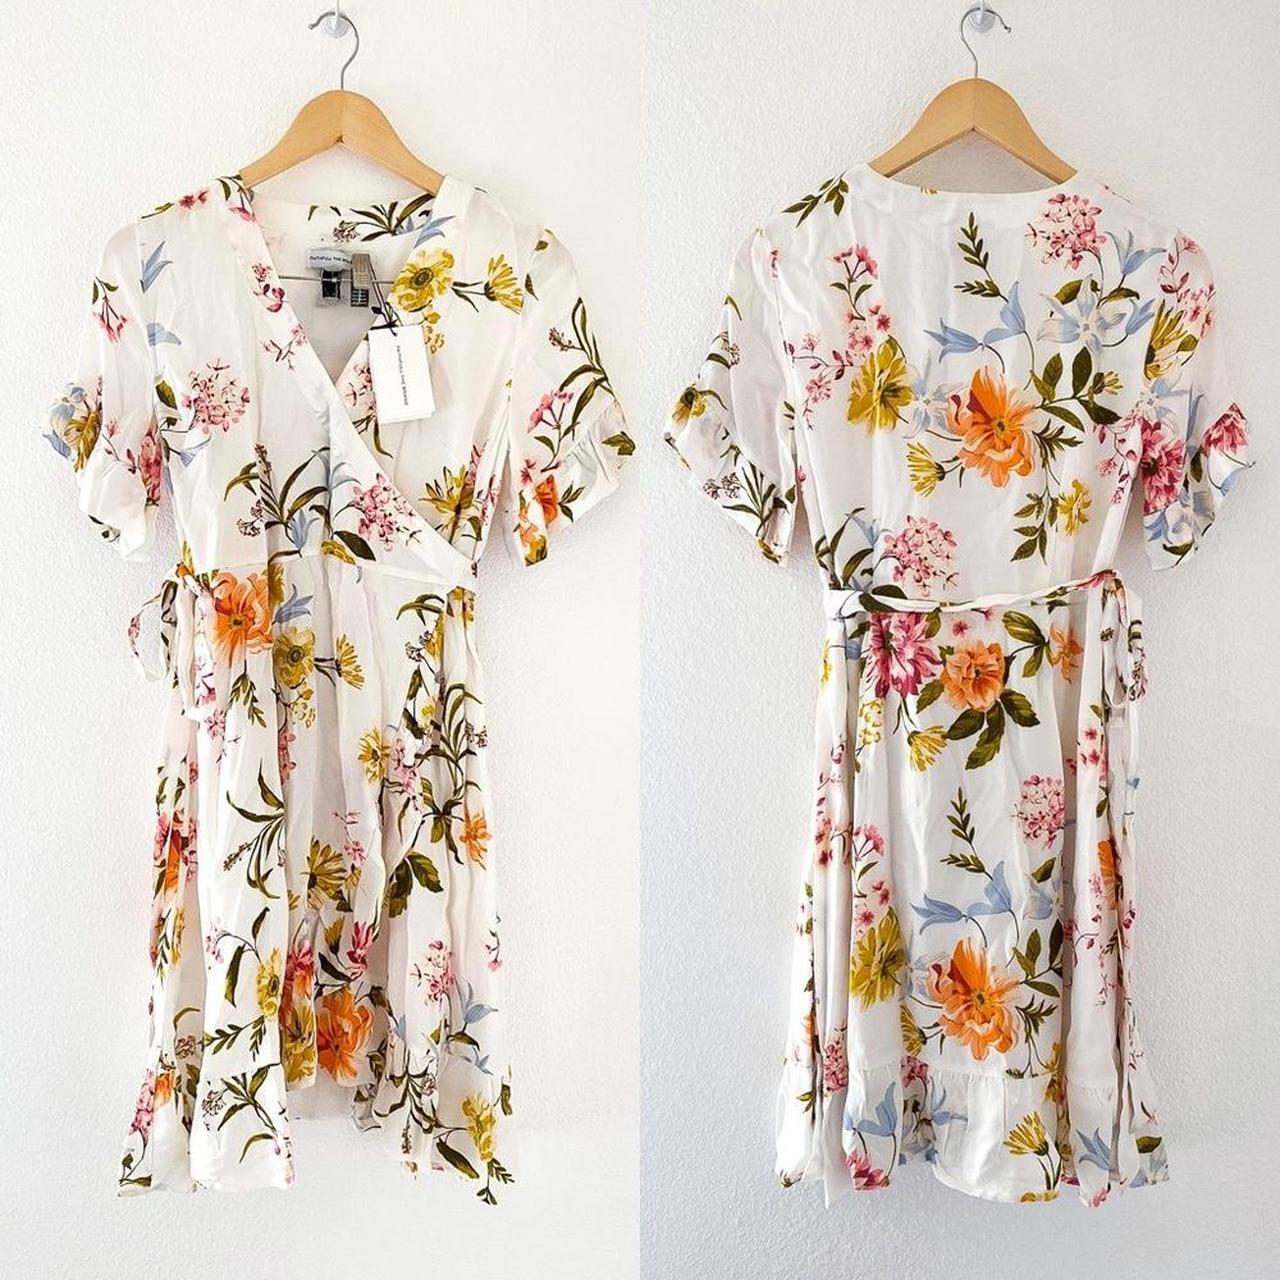 LOFT Floral Wrap Dress Color: White Multi Size:... - Depop